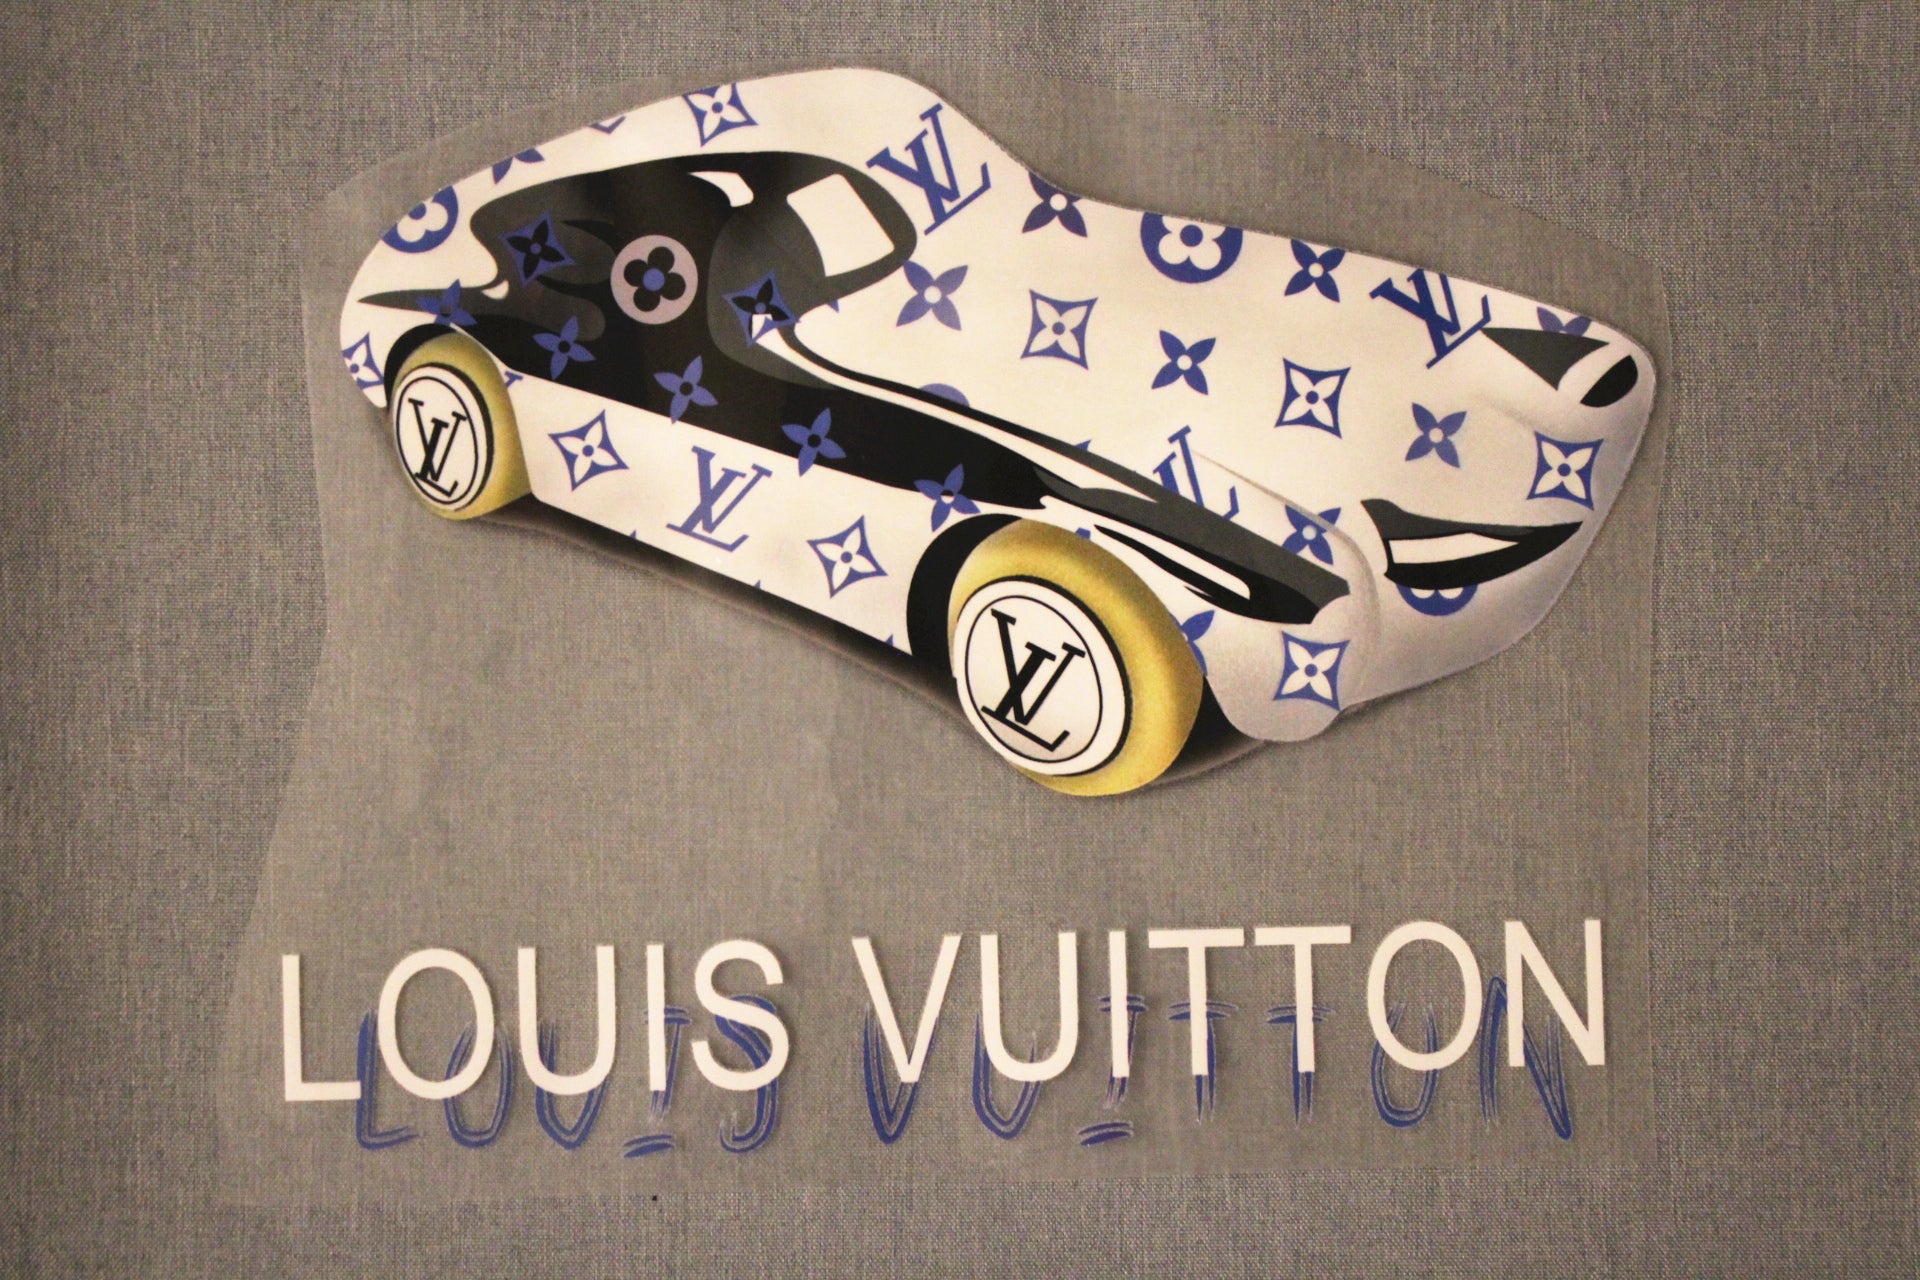 Louis Vuitton Iron On Transfers